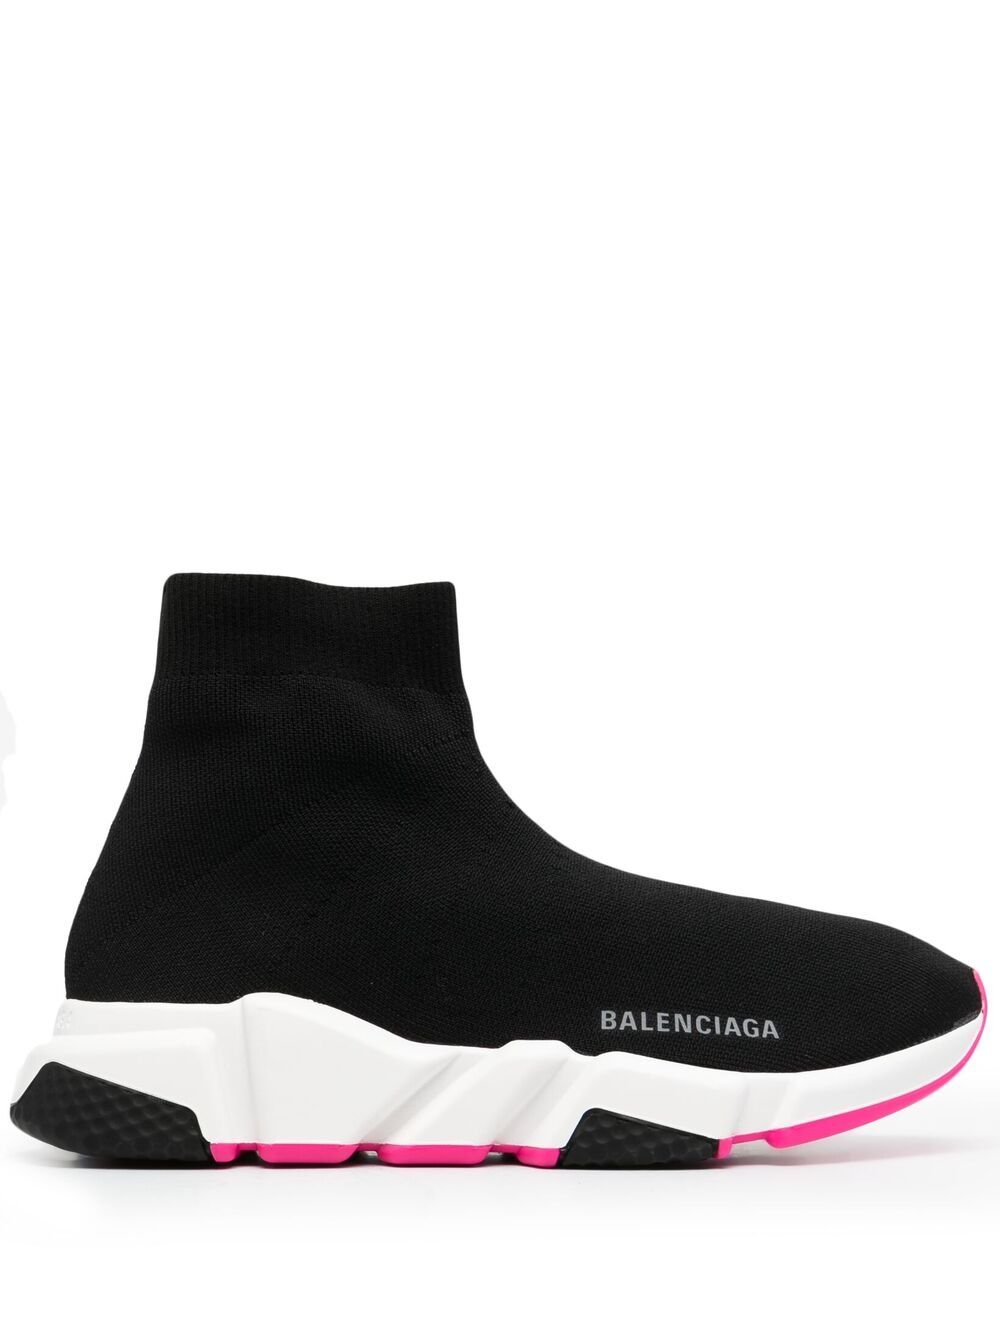 Speed Sneakers дамски обувки Balenciaga 842355696_37